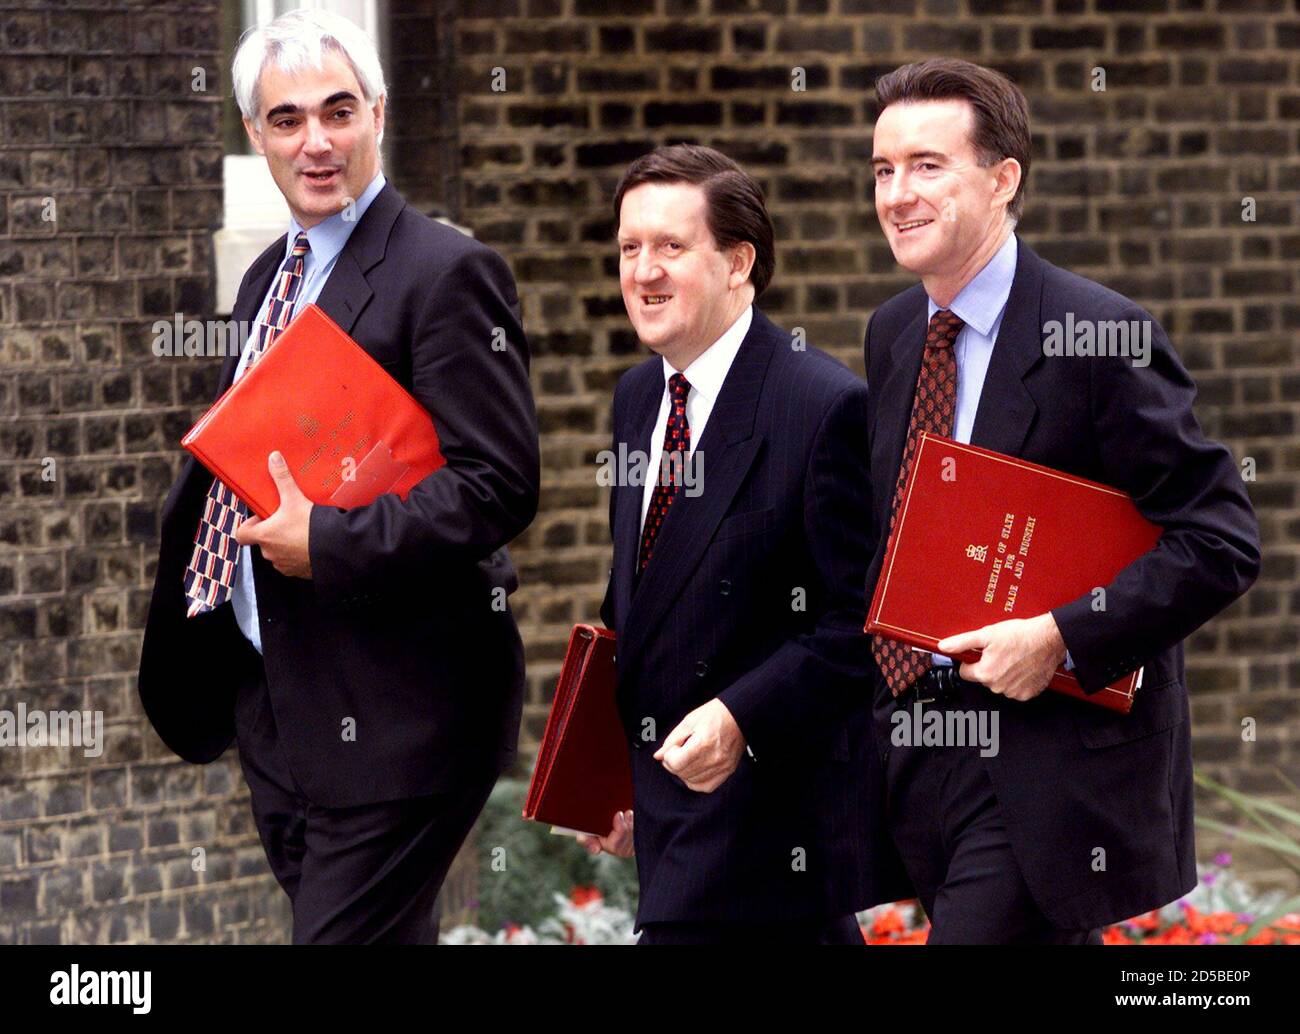 El nuevo Secretario de Estado de Comercio e Industria Peter Mandelson (R)  llega con el Secretario de Estado de Defensa George Robertson (C) y el  Secretario de Estado de Seguridad Social Alistair